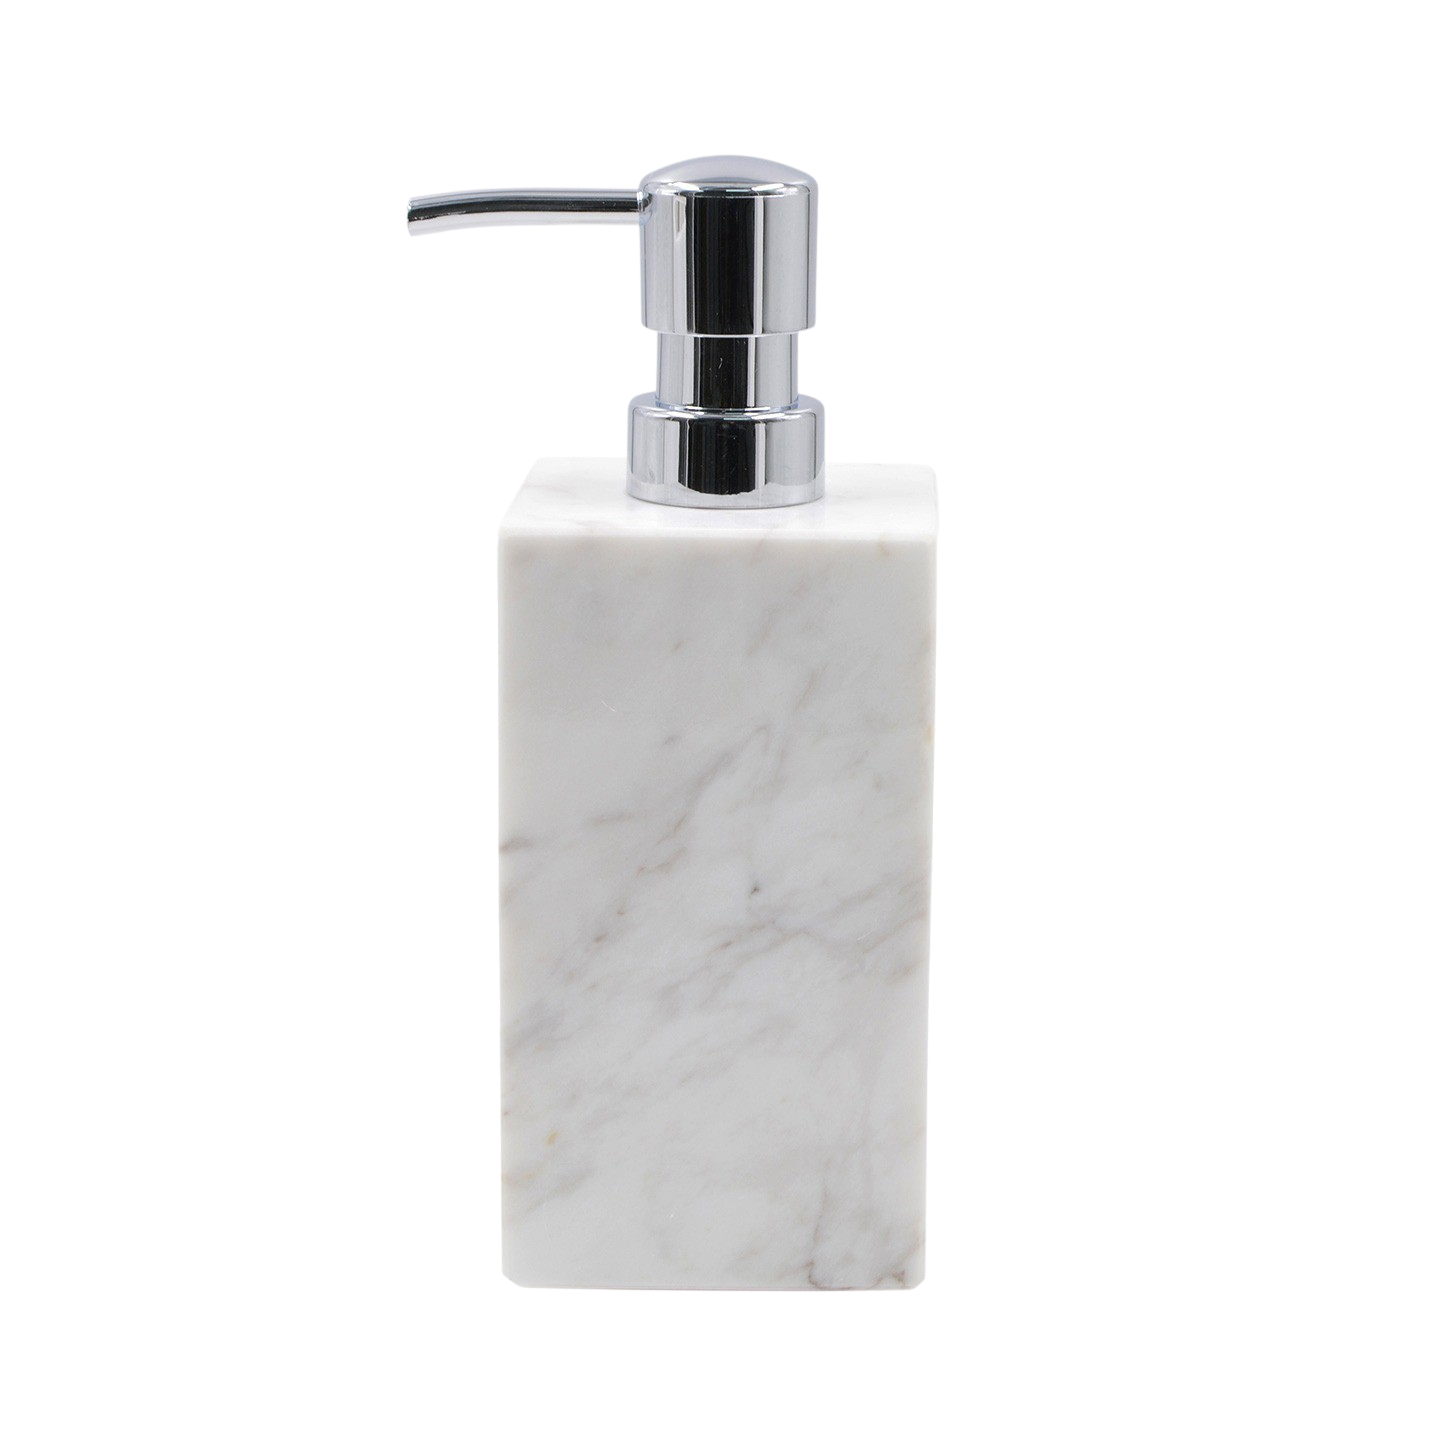 61832 PIETRA Liquid soap dispenser